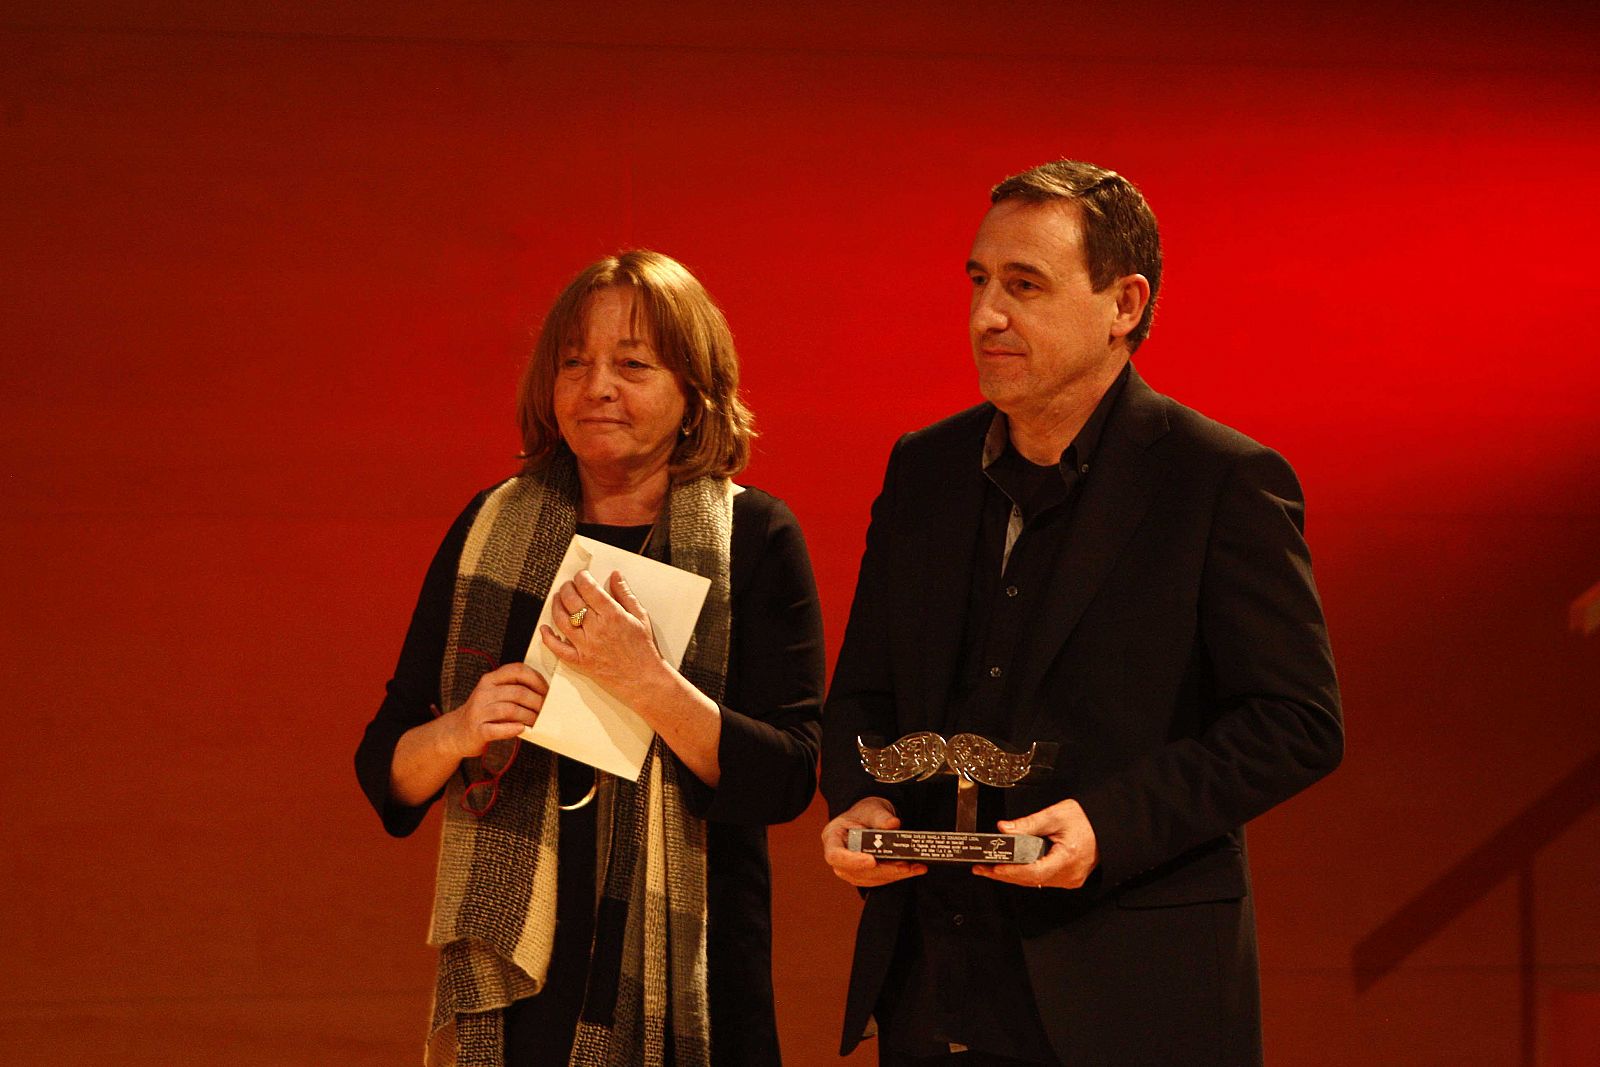 20/02/14 Lliurament dels Premis Carles Rahola de Comunicaci Local 2014 a l'Auditori de Girona.